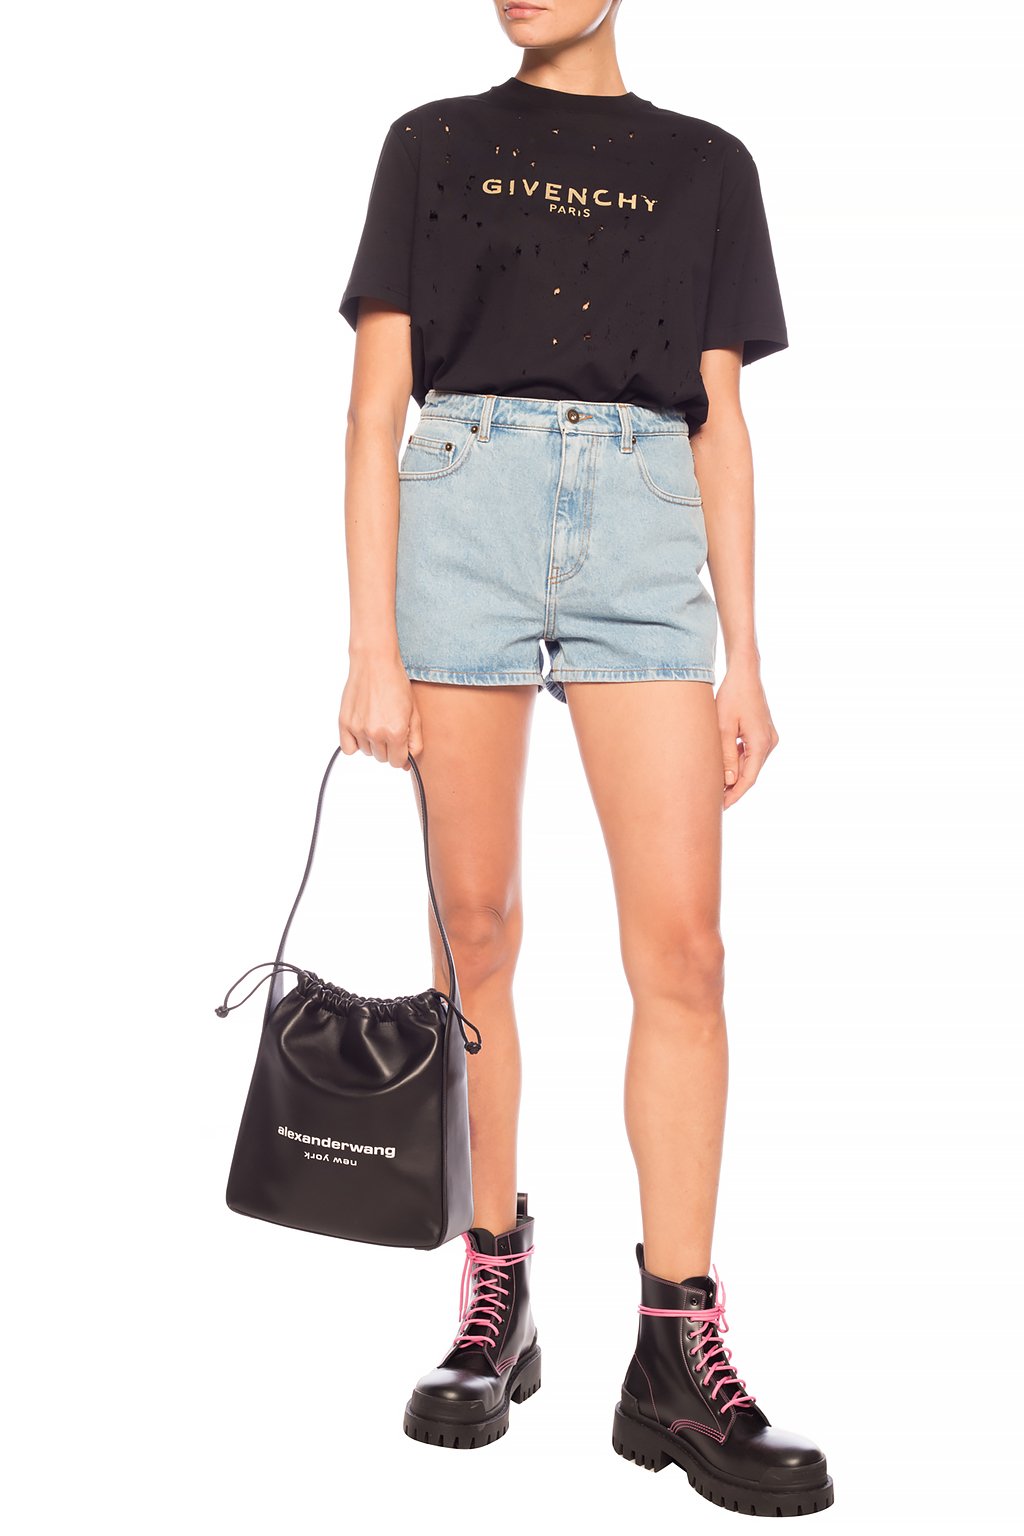 QC Givenchy ,Dior , Amiri ,Gucci ,T-shirt and shorts . : r/FashionReps